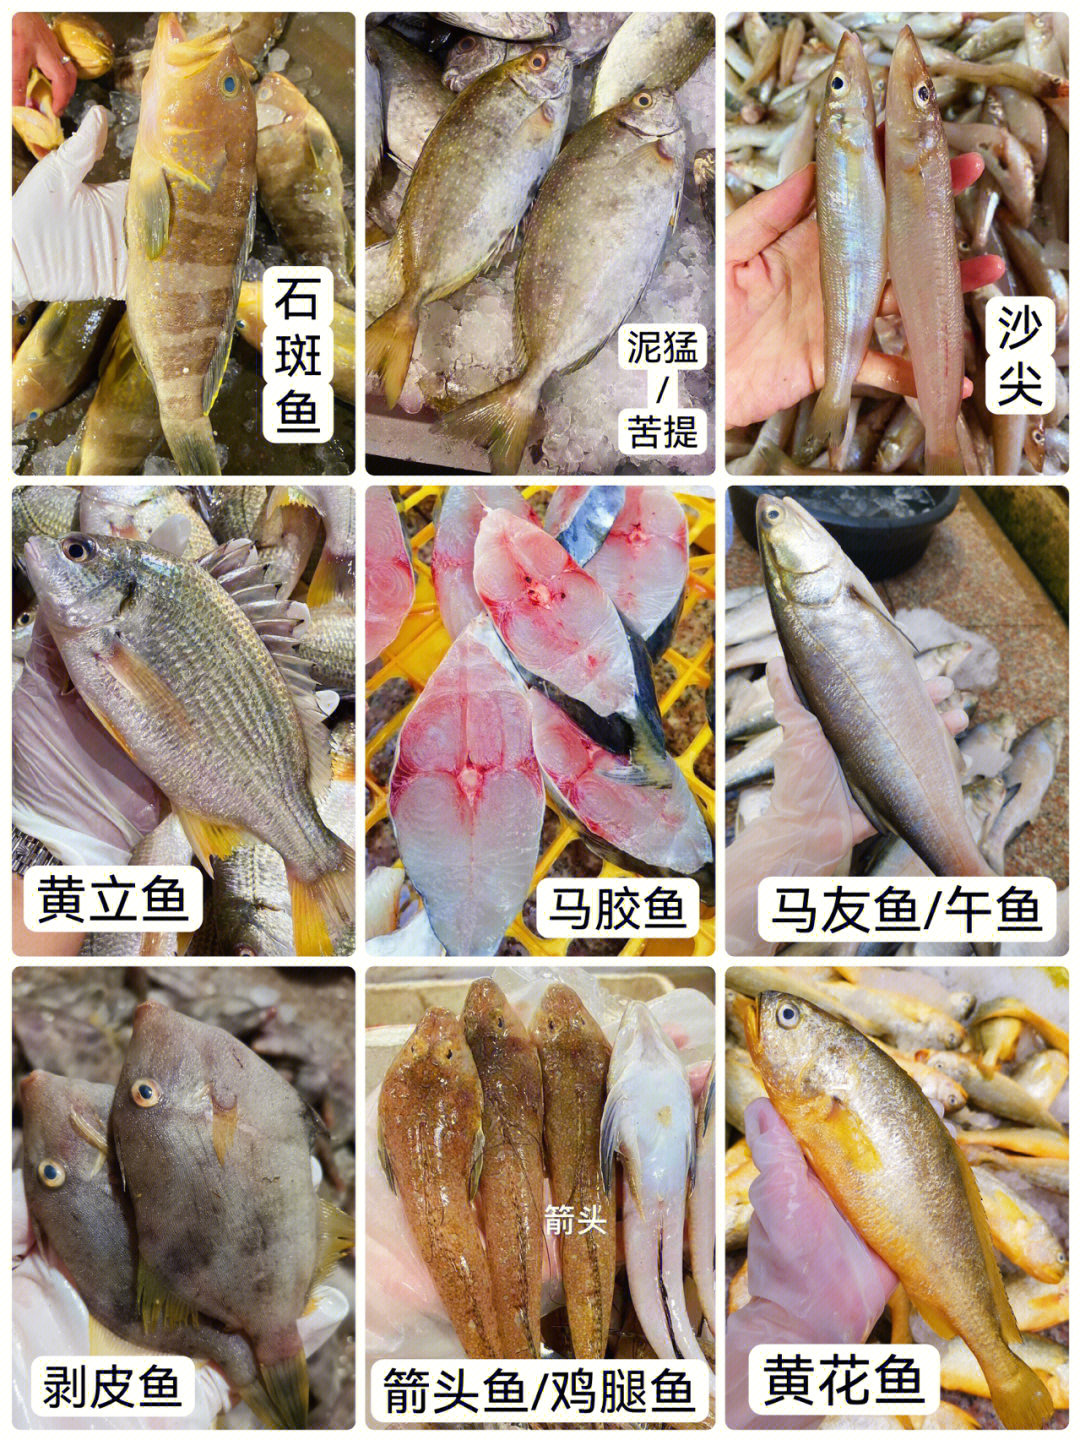 海鲜有哪些种类及名称图片